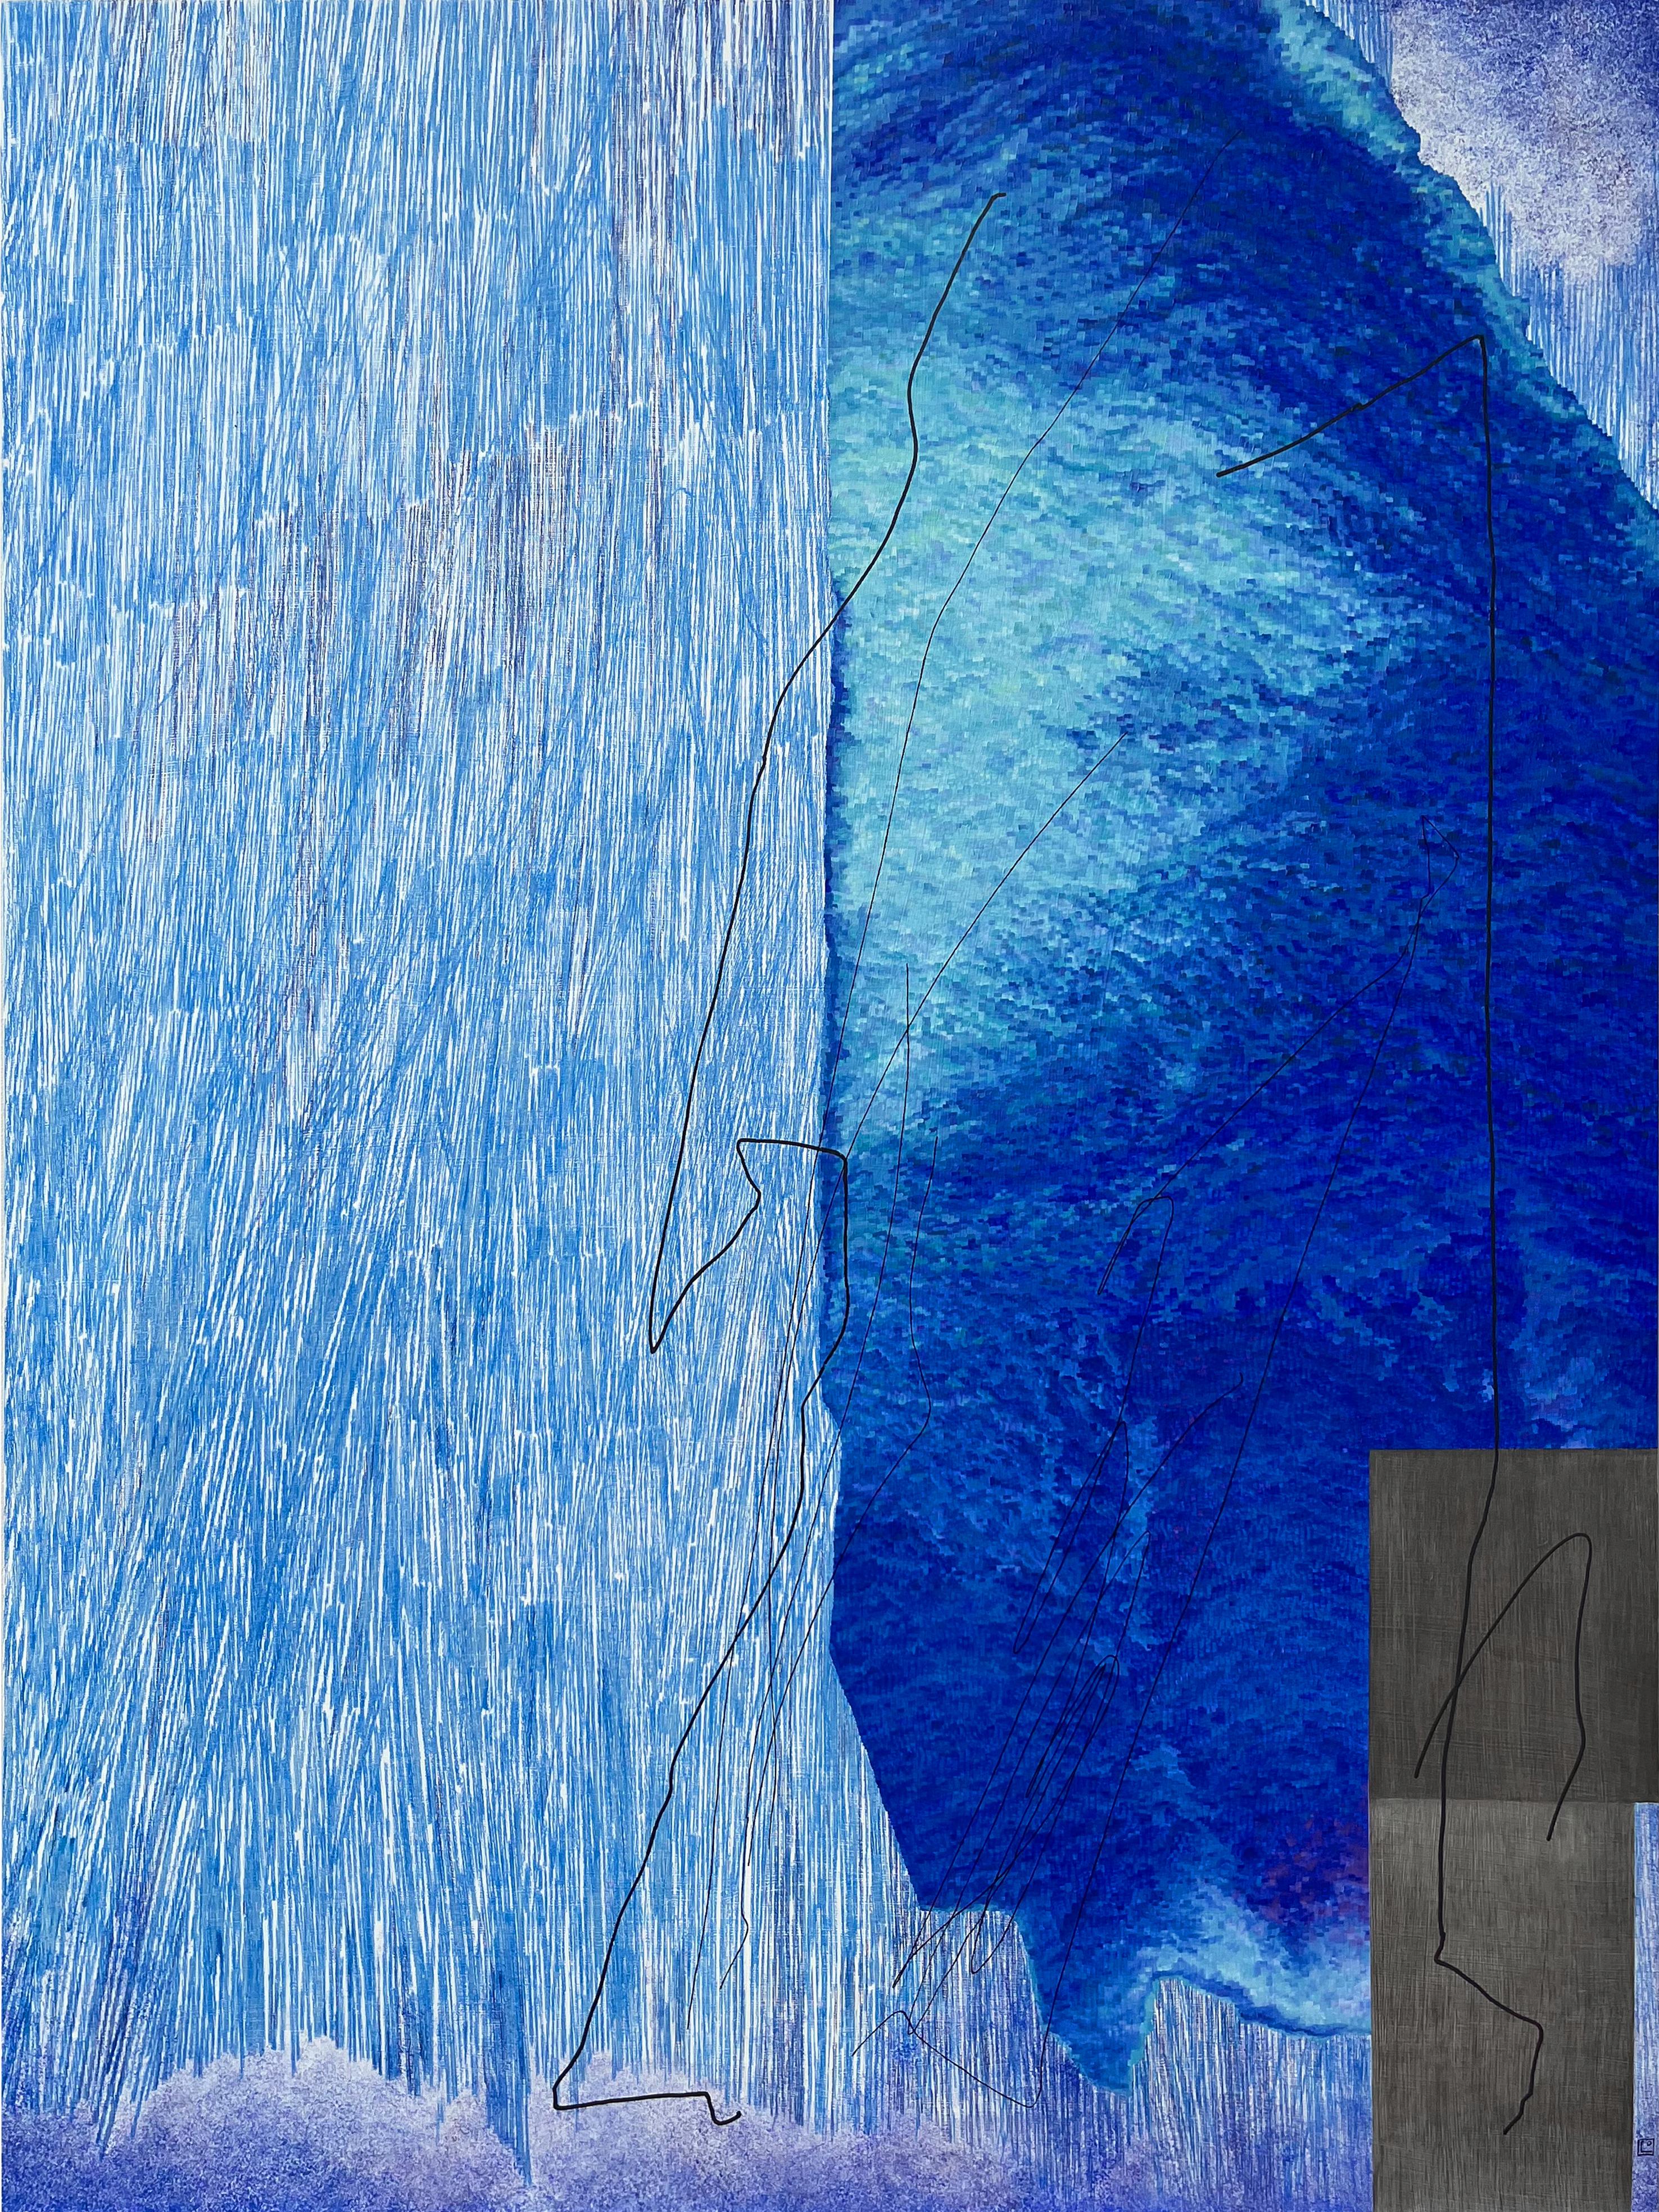 Russian Contemporary Art by Lena Ochkalova - Duality, Blue